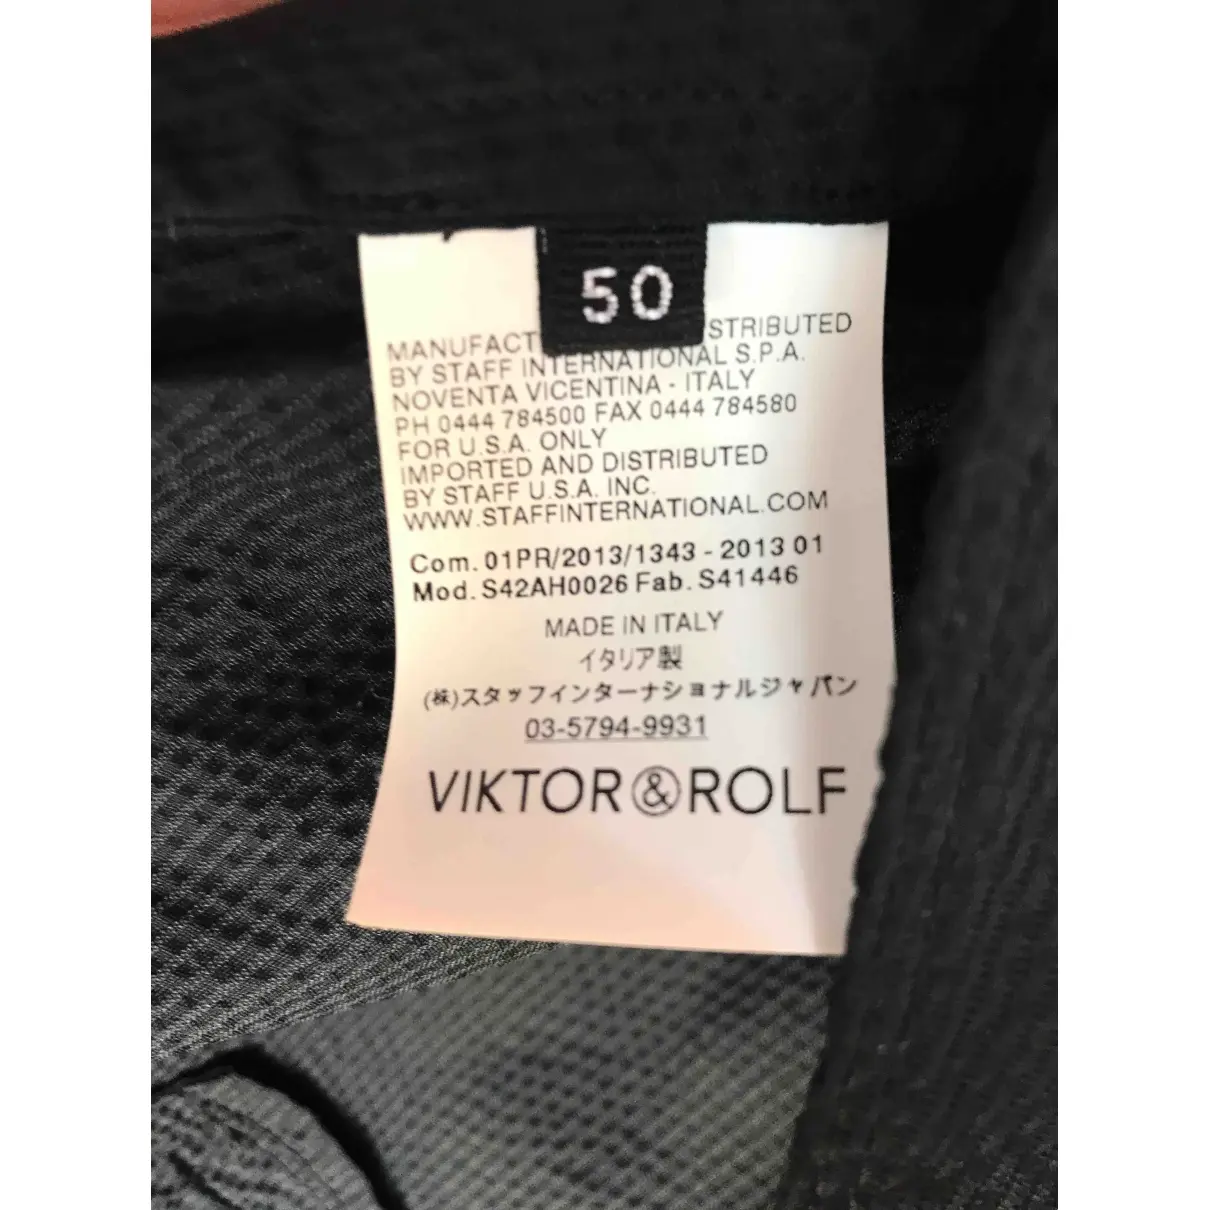 Buy Viktor & Rolf Trenchcoat online